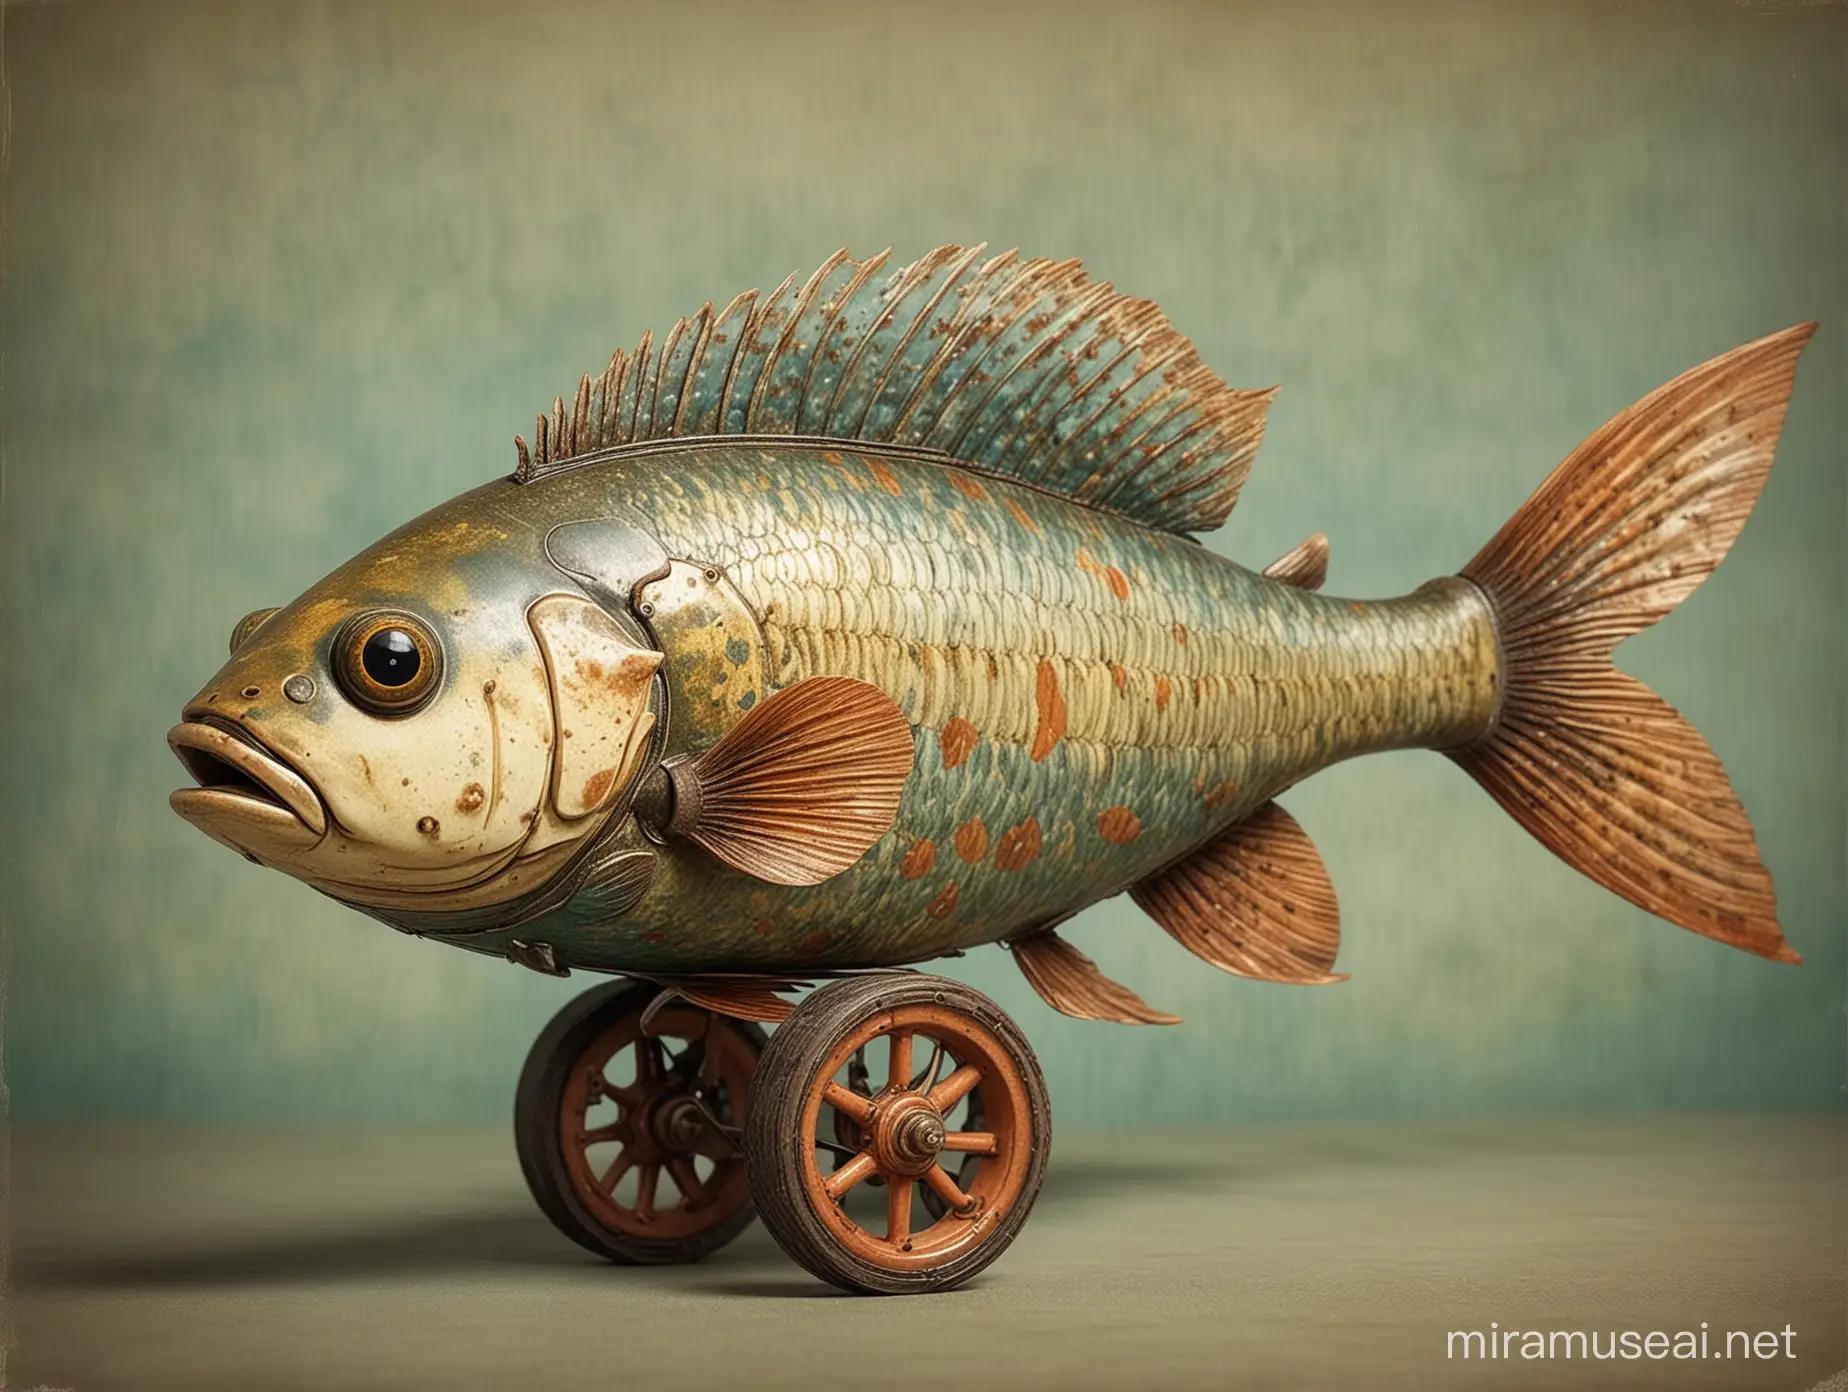 un poisson avec de jolies roulettes, style jouet ancien, l’image respire le charme d’une époque révolue, capturant l’imagination avec son mélange unique de détails minutieux et de réminiscences vintage